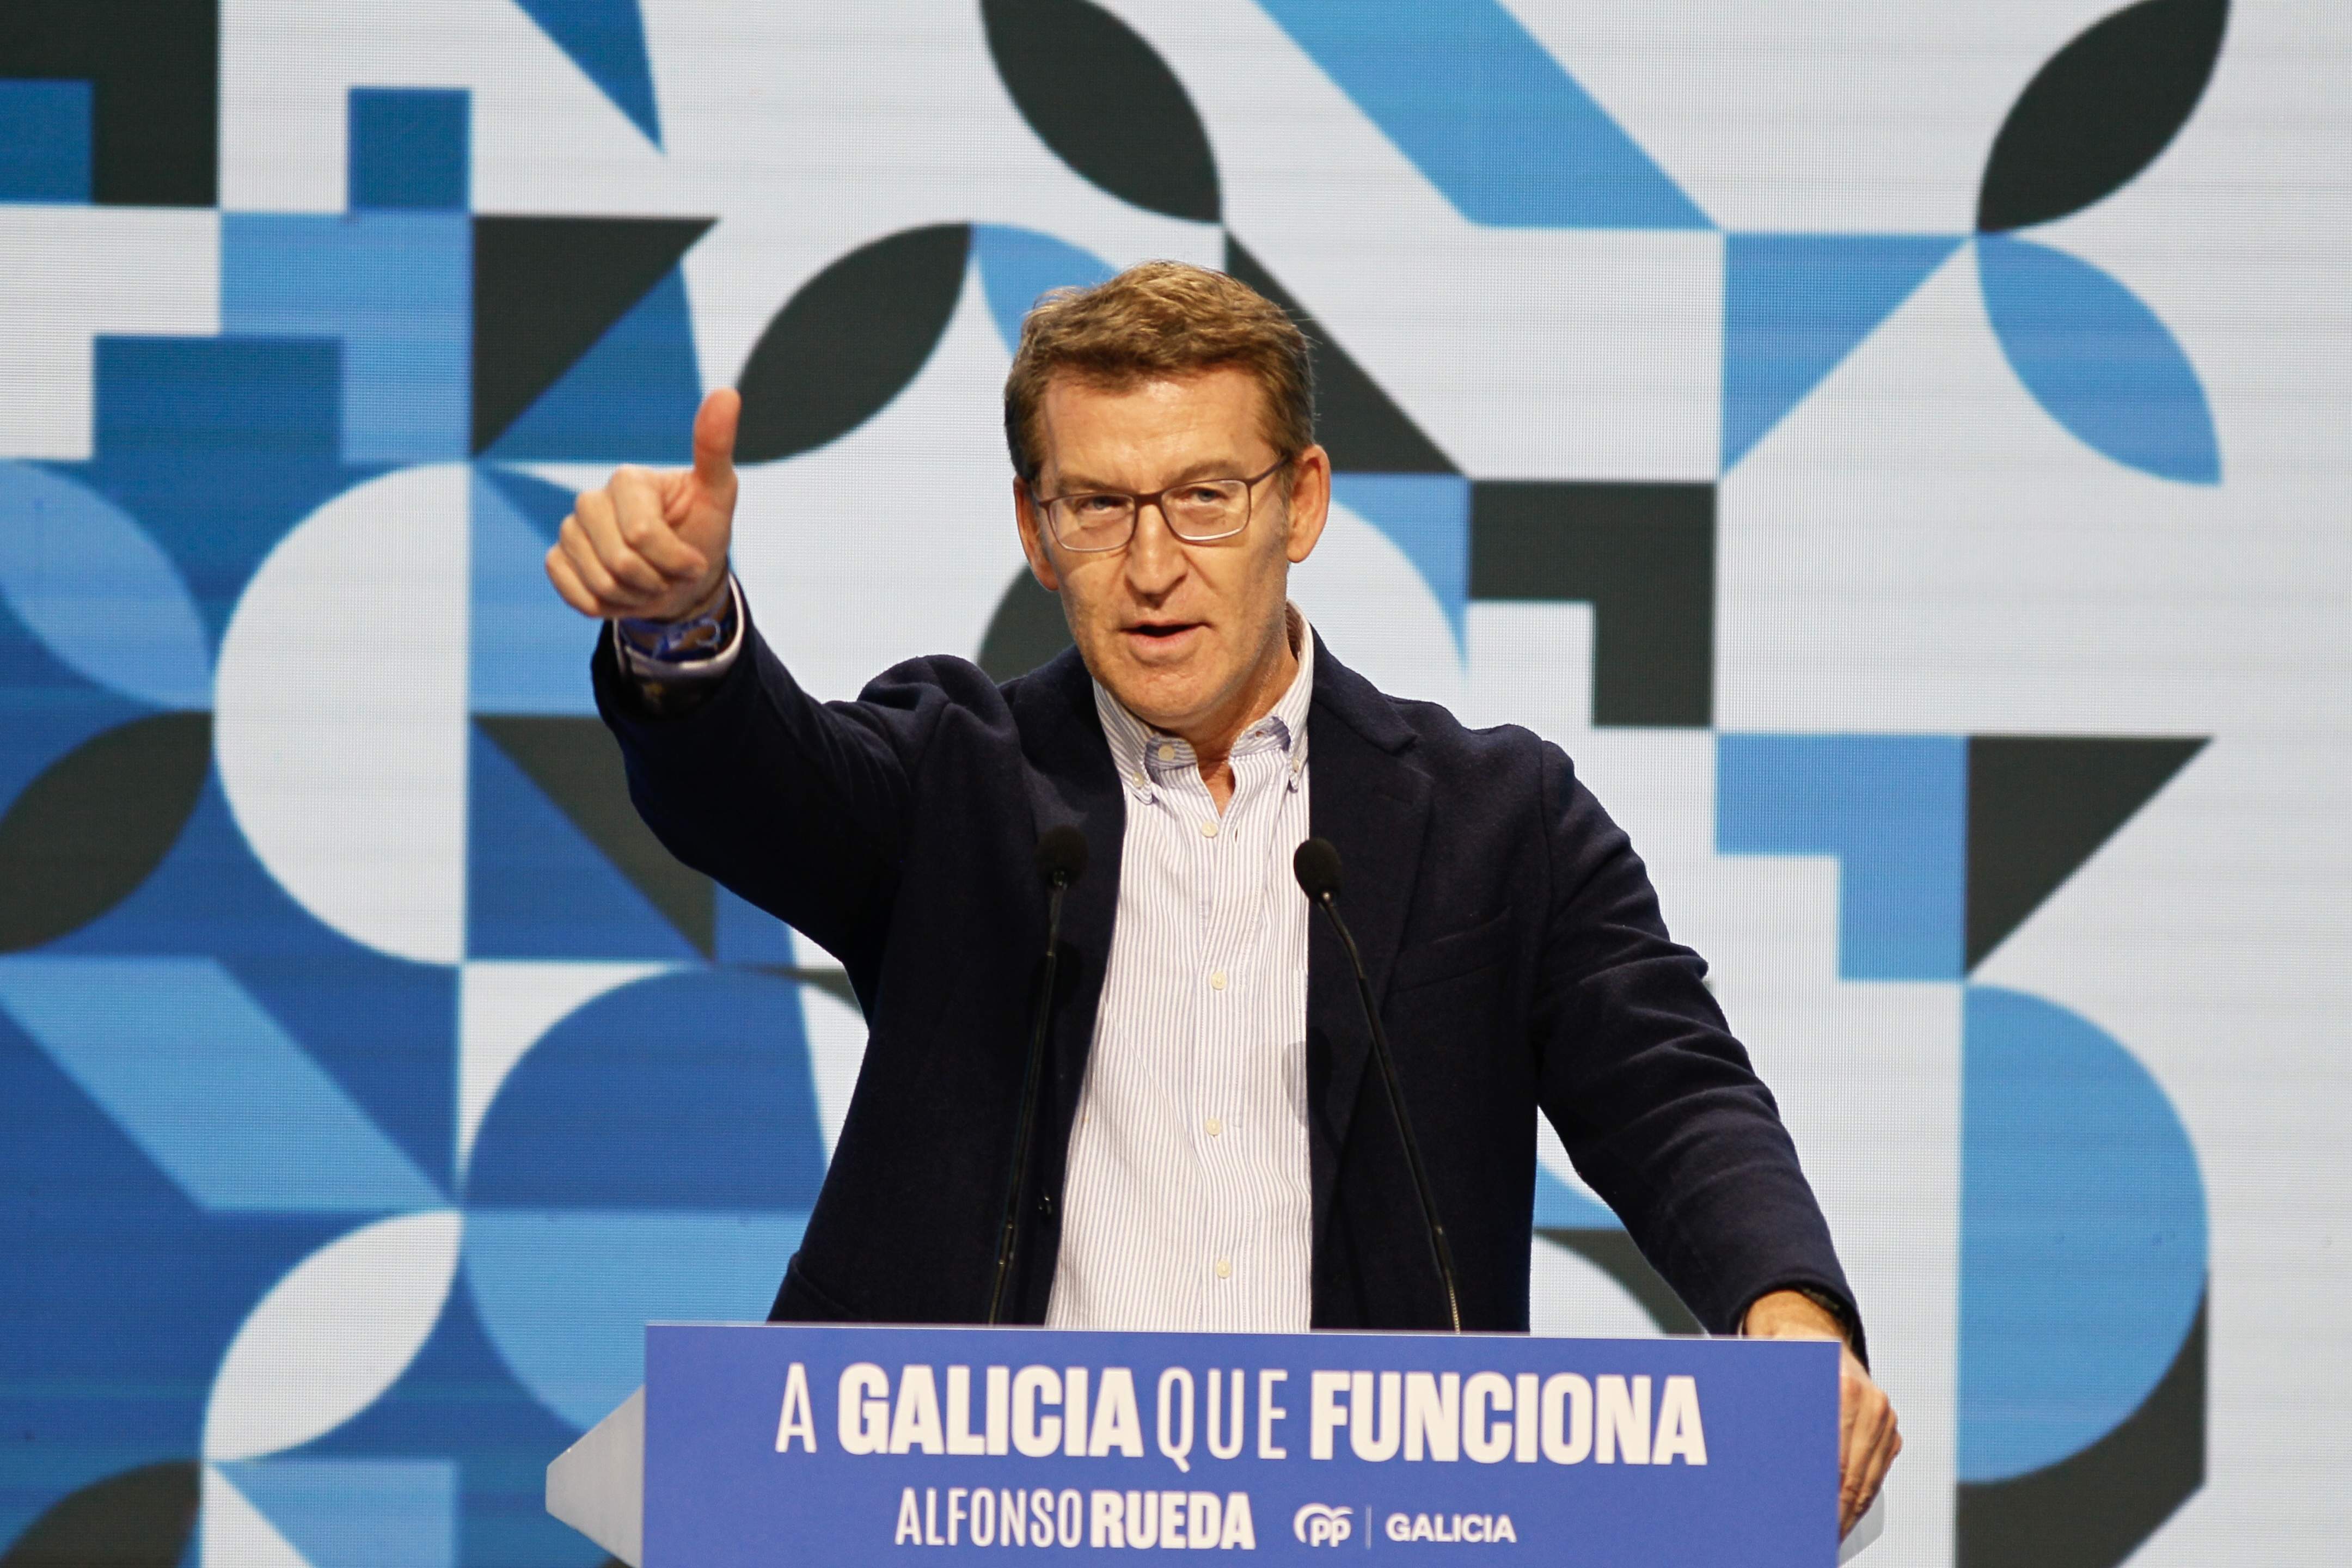 El PP s'apropa a la majoria absoluta després de la patacada del PSOE a Galícia, segons un sondeig